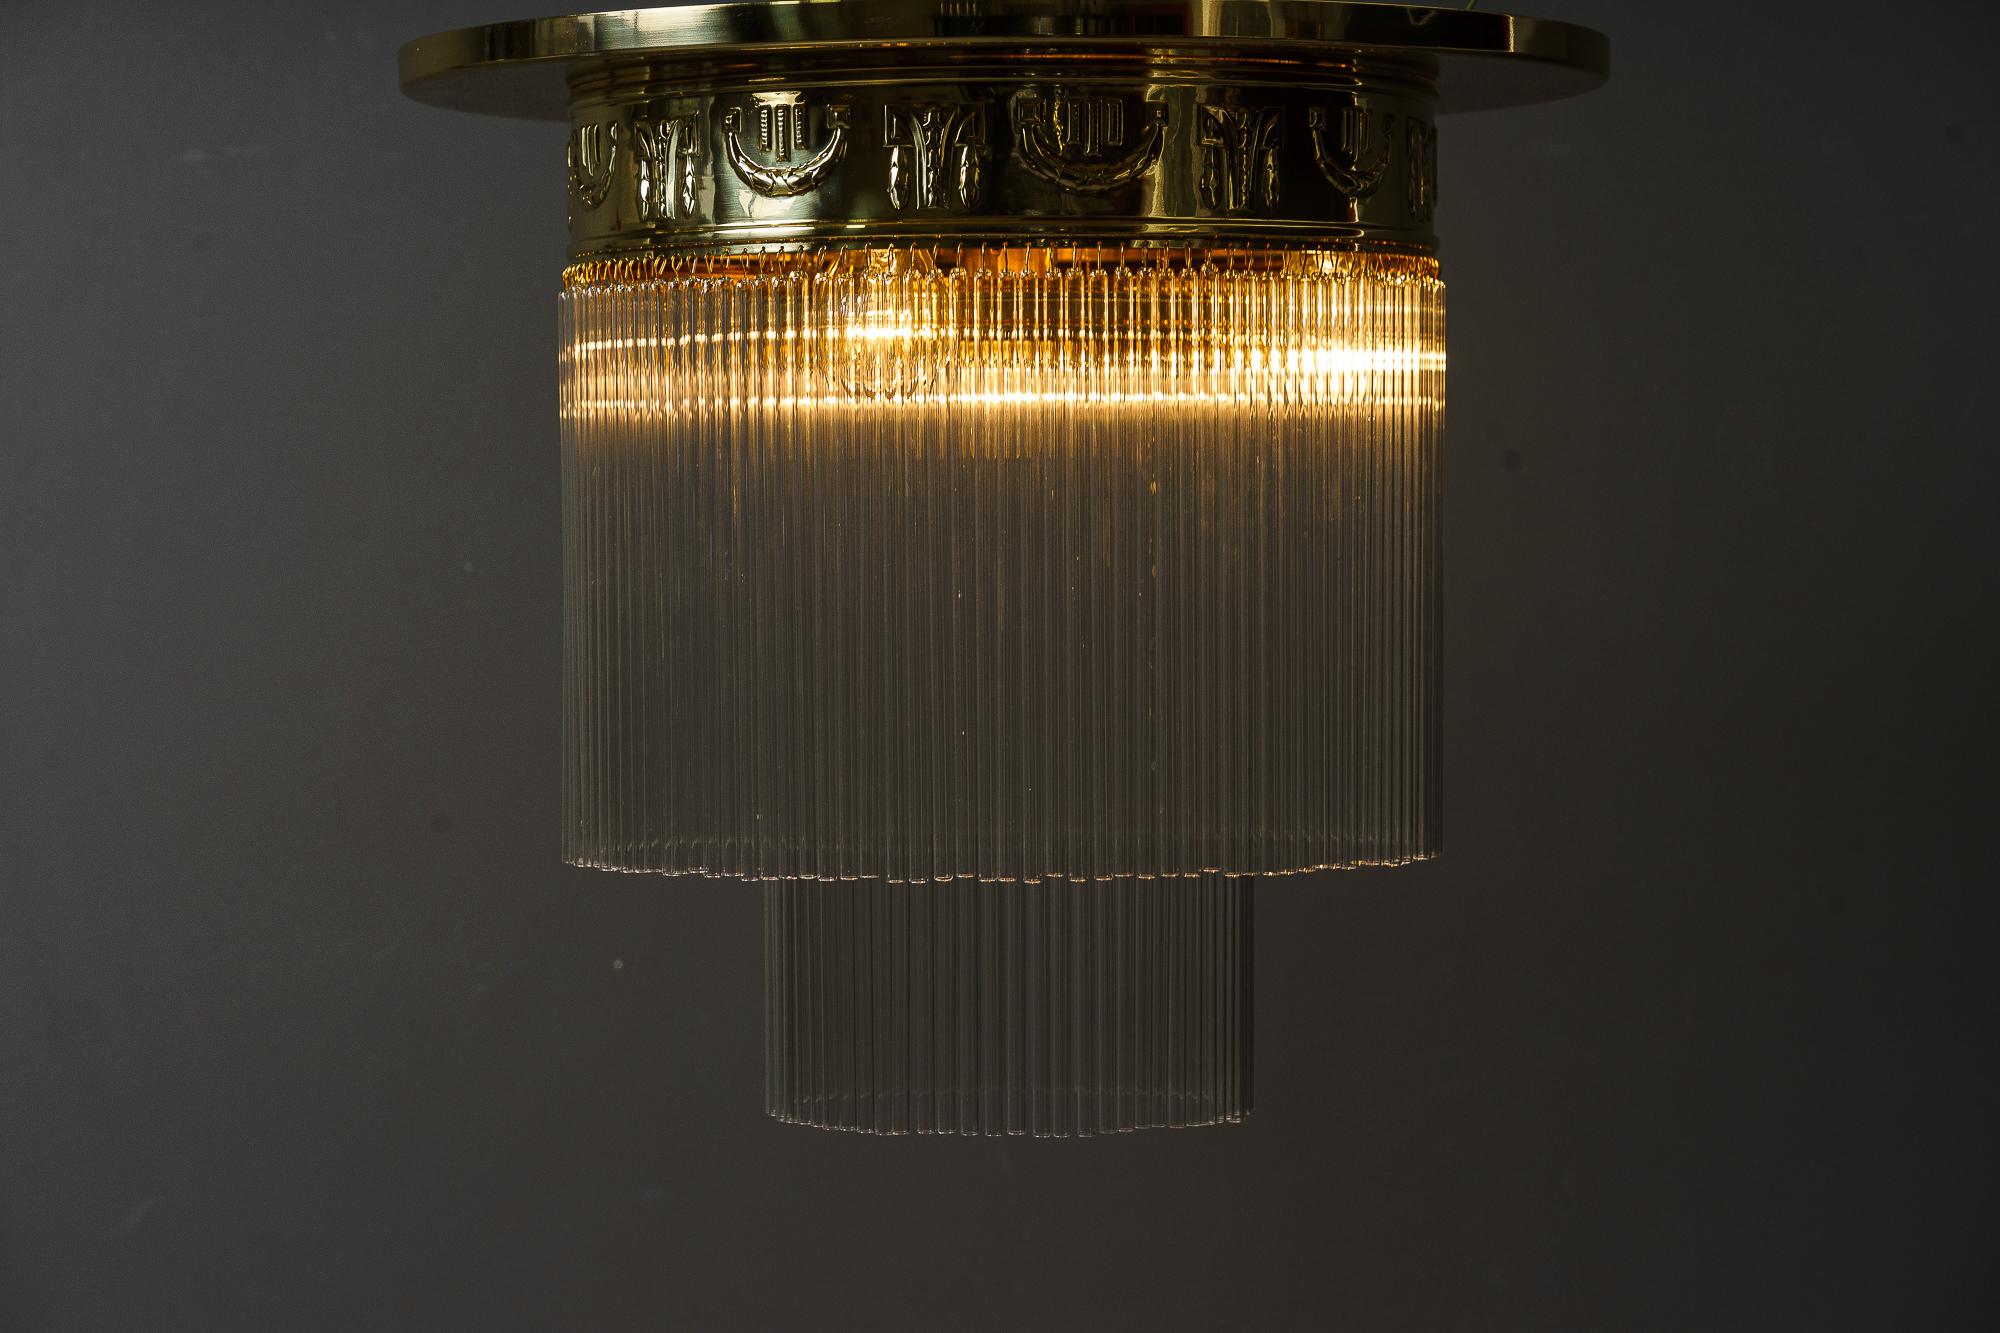 Jugendstil-Deckenlampe mit Glasstäben Wien um 1908.
Glasstäbe werden ersetzt (neu)
4 Glühbirnen.